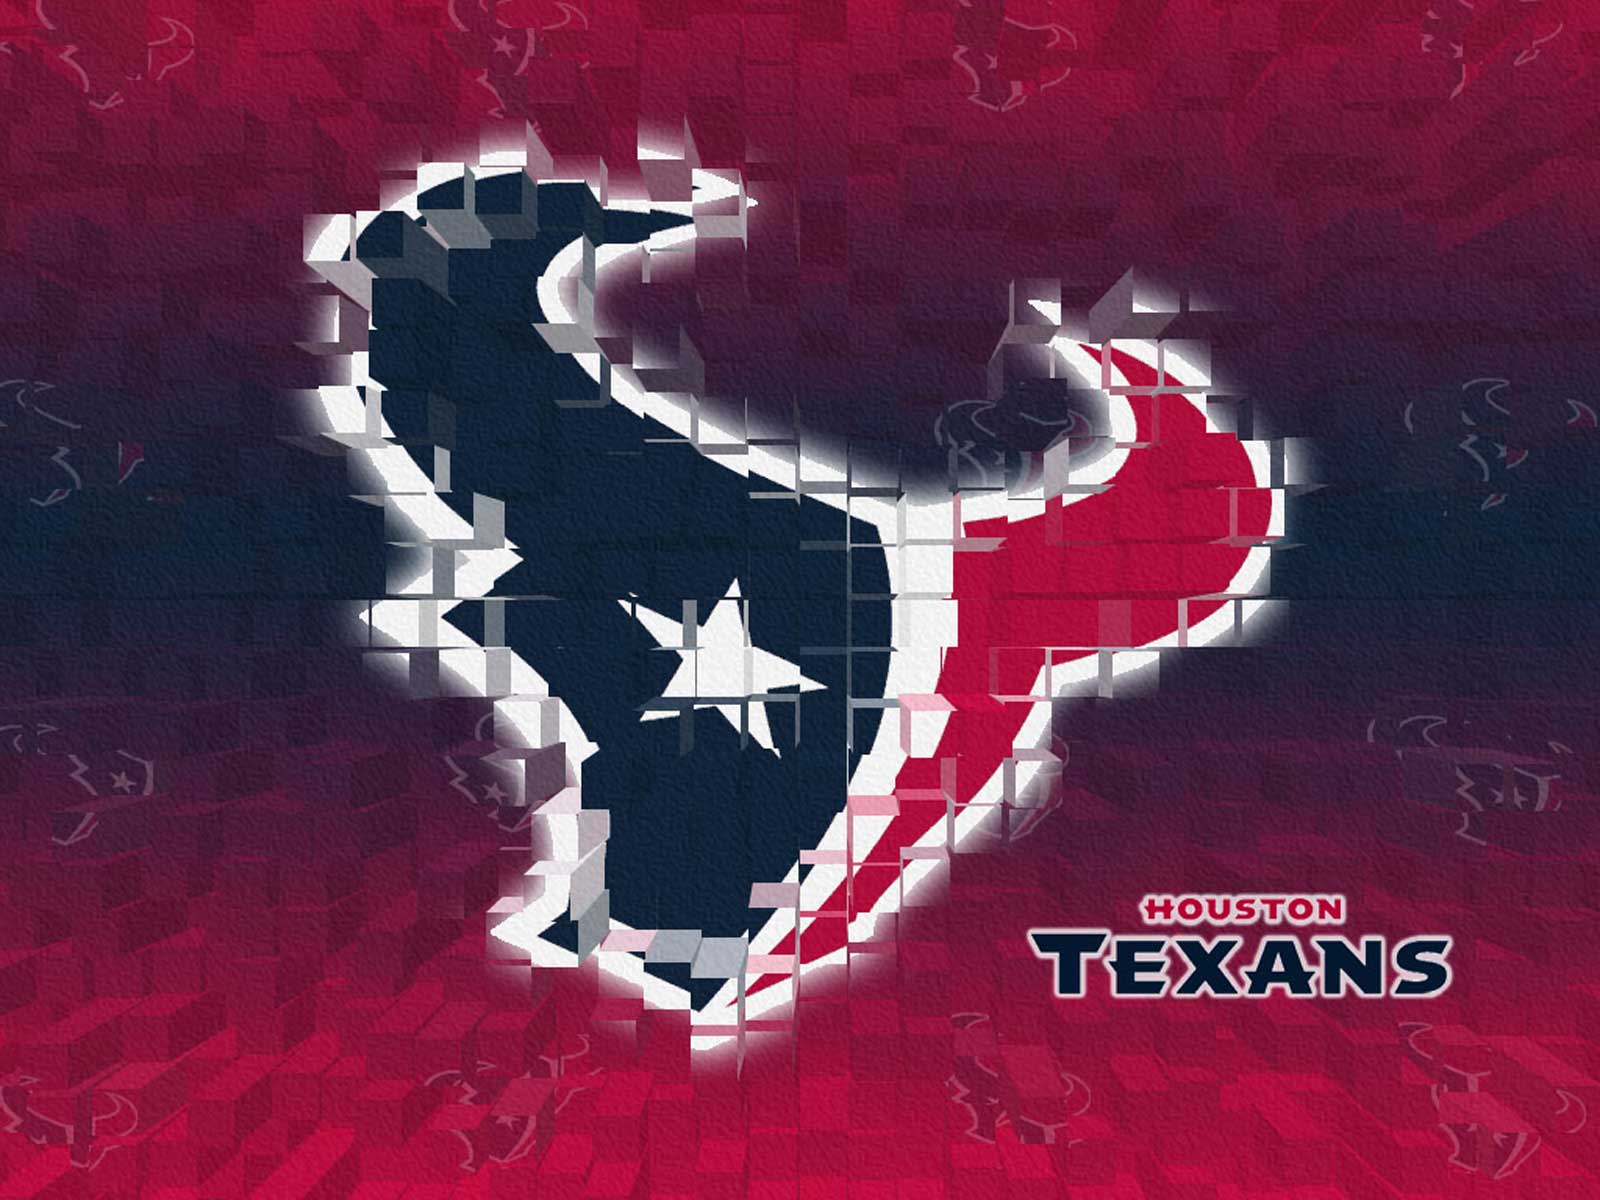 Chris-Houston-Texans.jpg